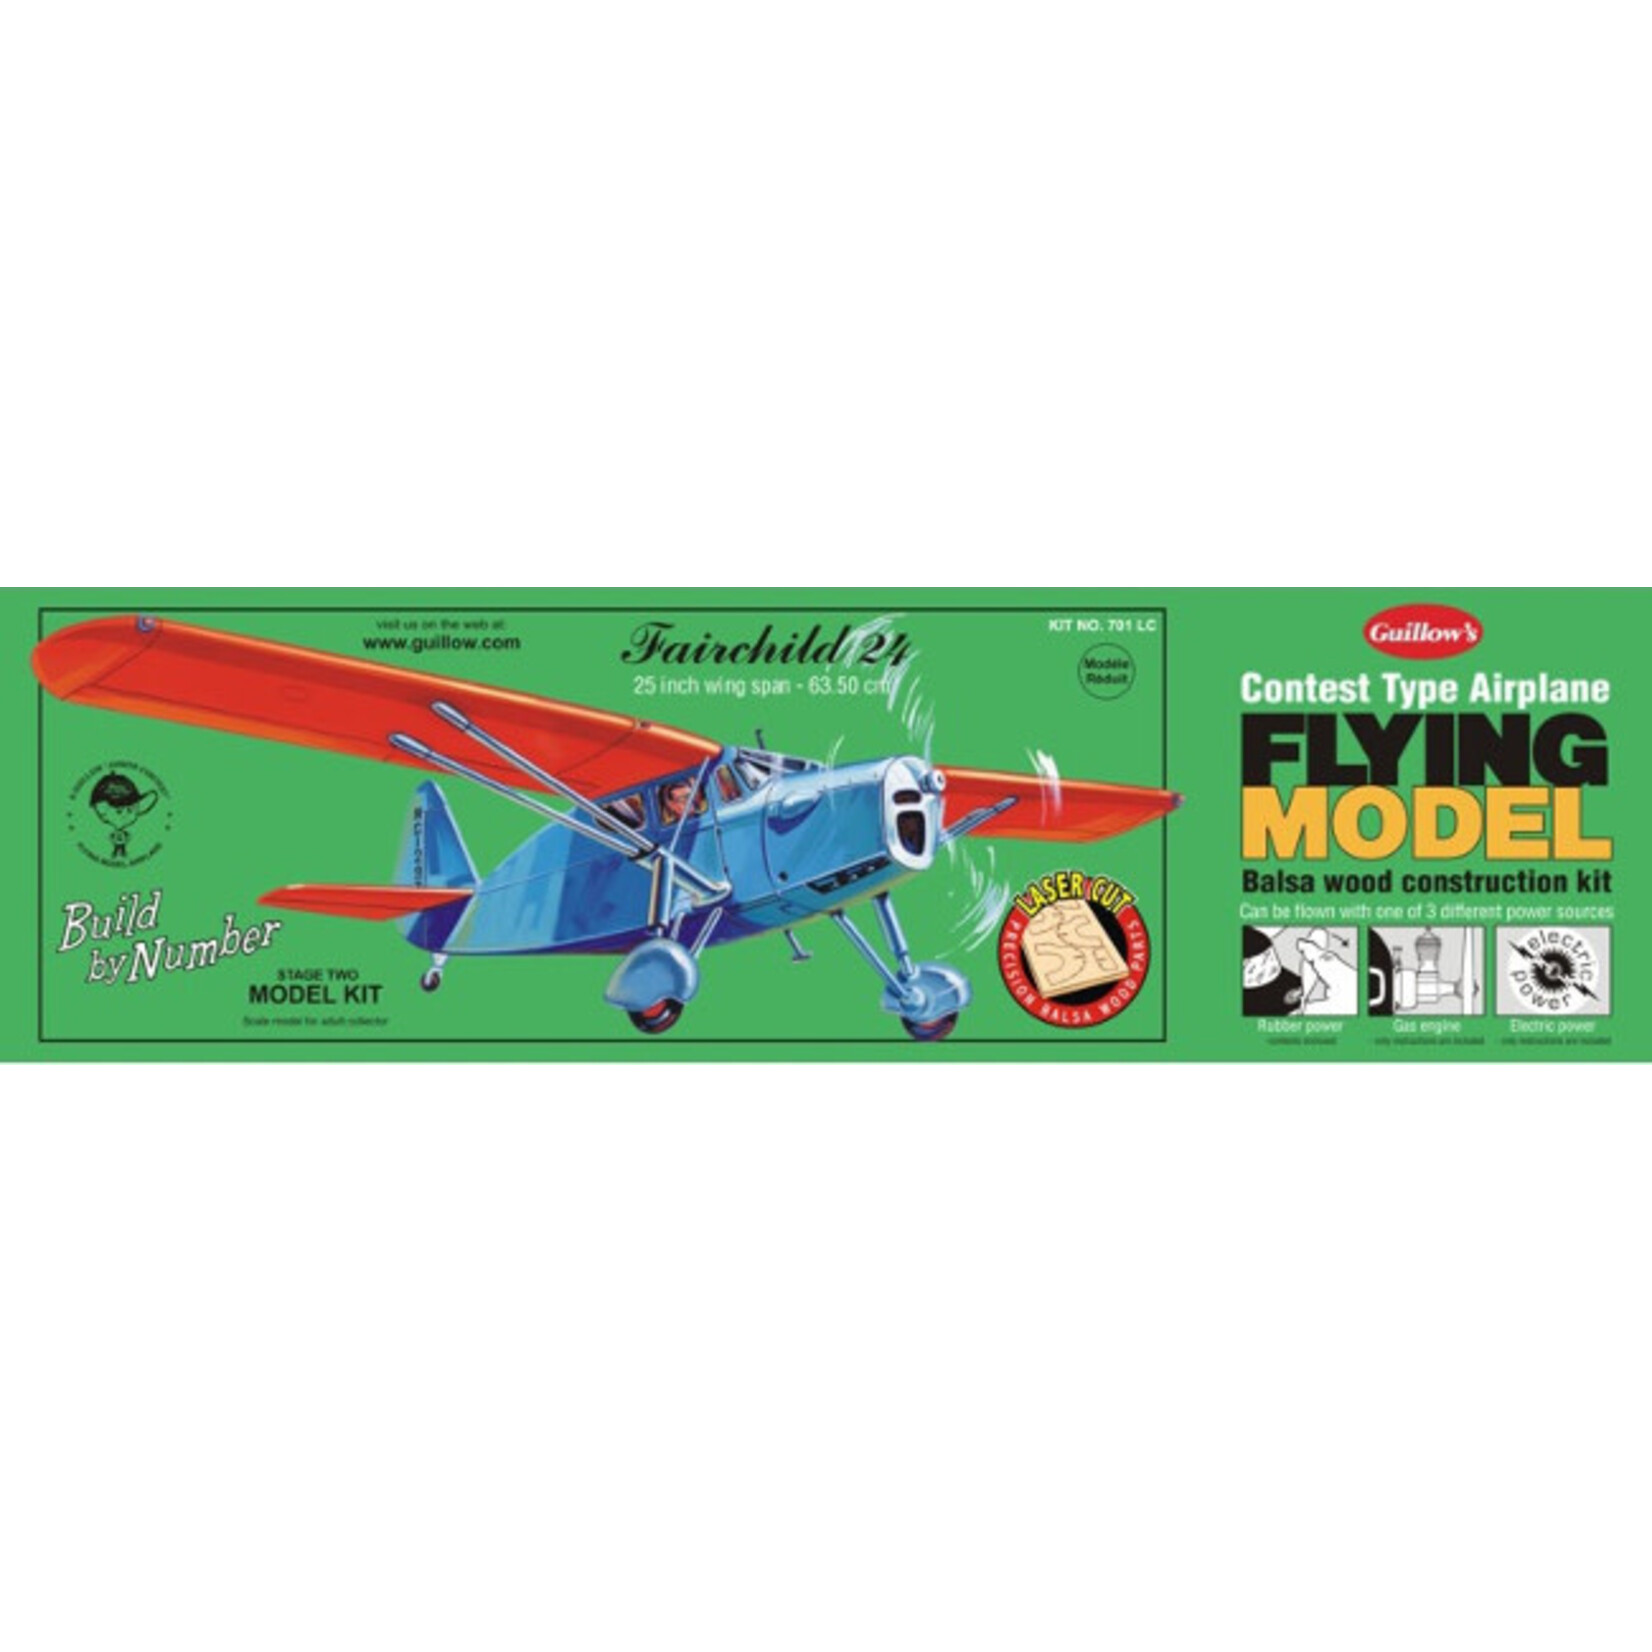 Guillow Fairchild Laser Cut Model Kit